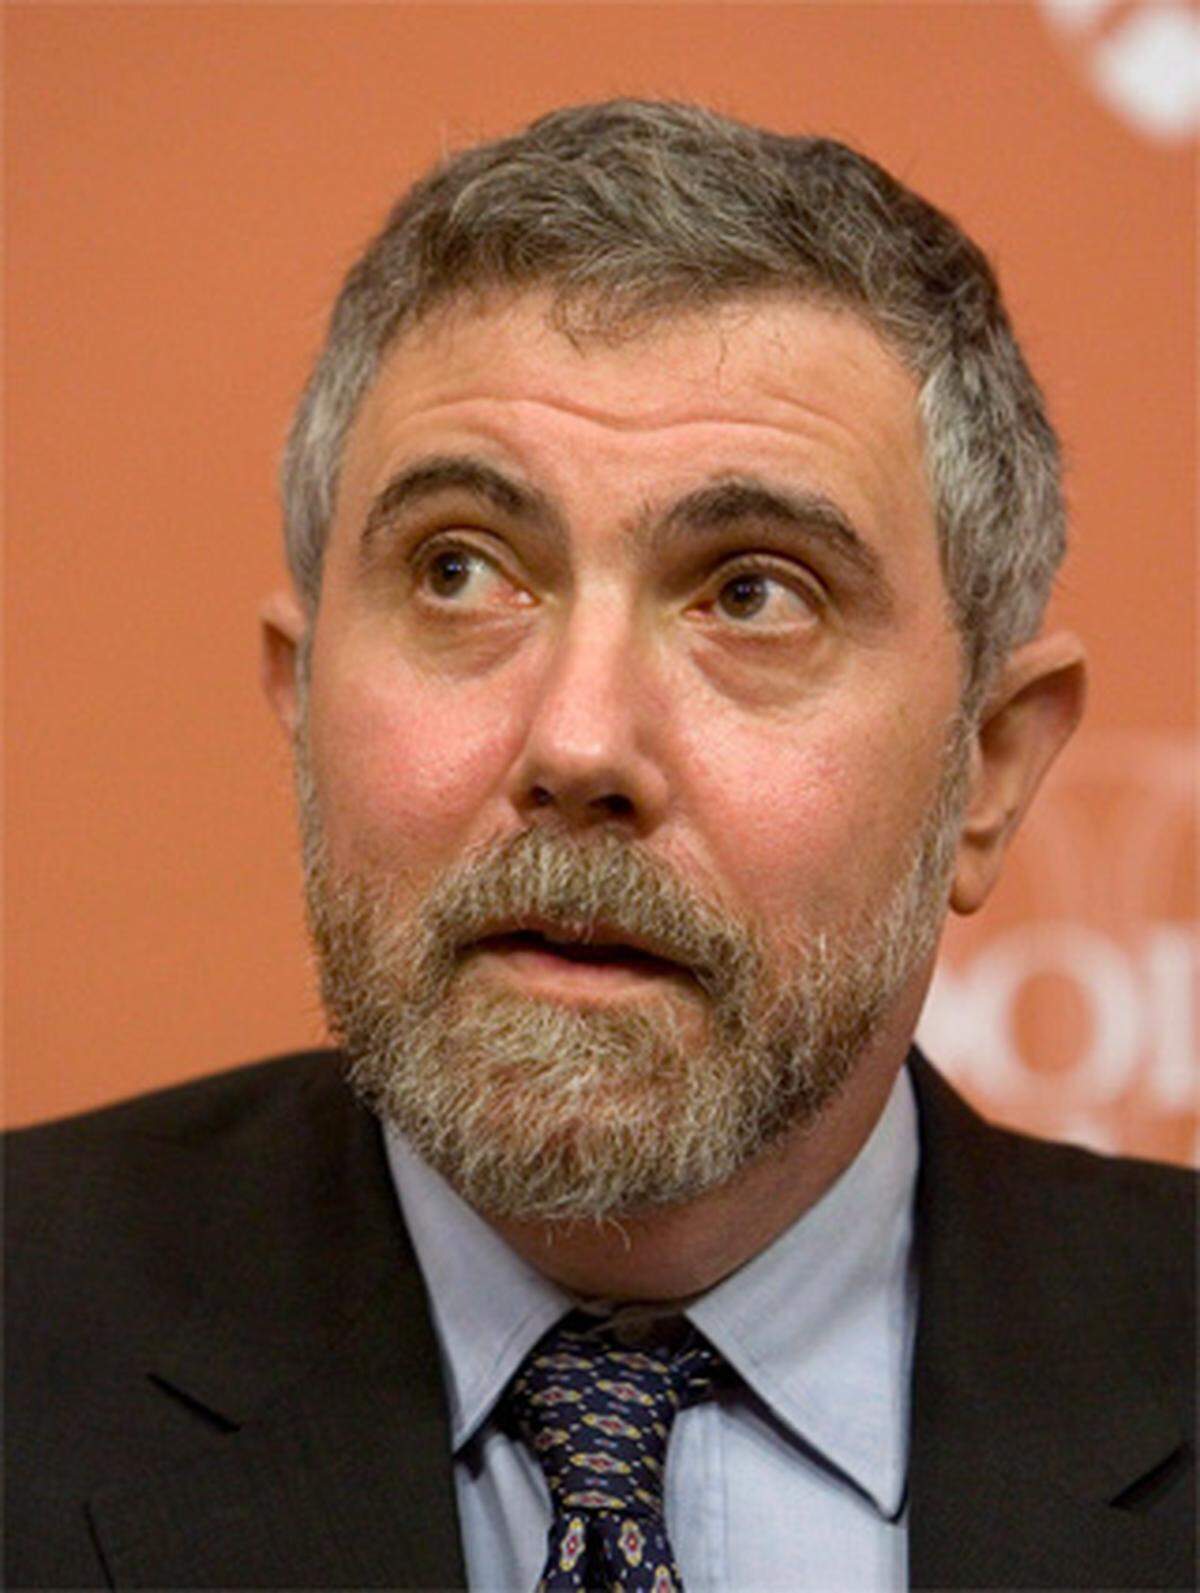 Auch Dennis Snower vom Institut für Weltwirtschaft zieht Fazit: "Es gibt viele eitle Leute, die ihre Arbeit nun auf den Müll werfen müssen".Paul Krugman zeigt sich jedenfalls selbstkritisch, aber auch ratlos: "Wir brauchen eine ganz neue Art, Ökonomie zu lehren. Ich weiß aber auch nicht so genau, wie das gehen soll".Eines habe die Krise gezeigt, betont Nienhaus: Ökonomie ist keine exakte Wissenschaft: "Konjunkturprognosen sind im Vergleich zu Wetterprognosen eine Farce". Und es ist letztlich diese Erkenntnis, die Ökonomen auch 2010 im Dunkeln tappen lassen wird.